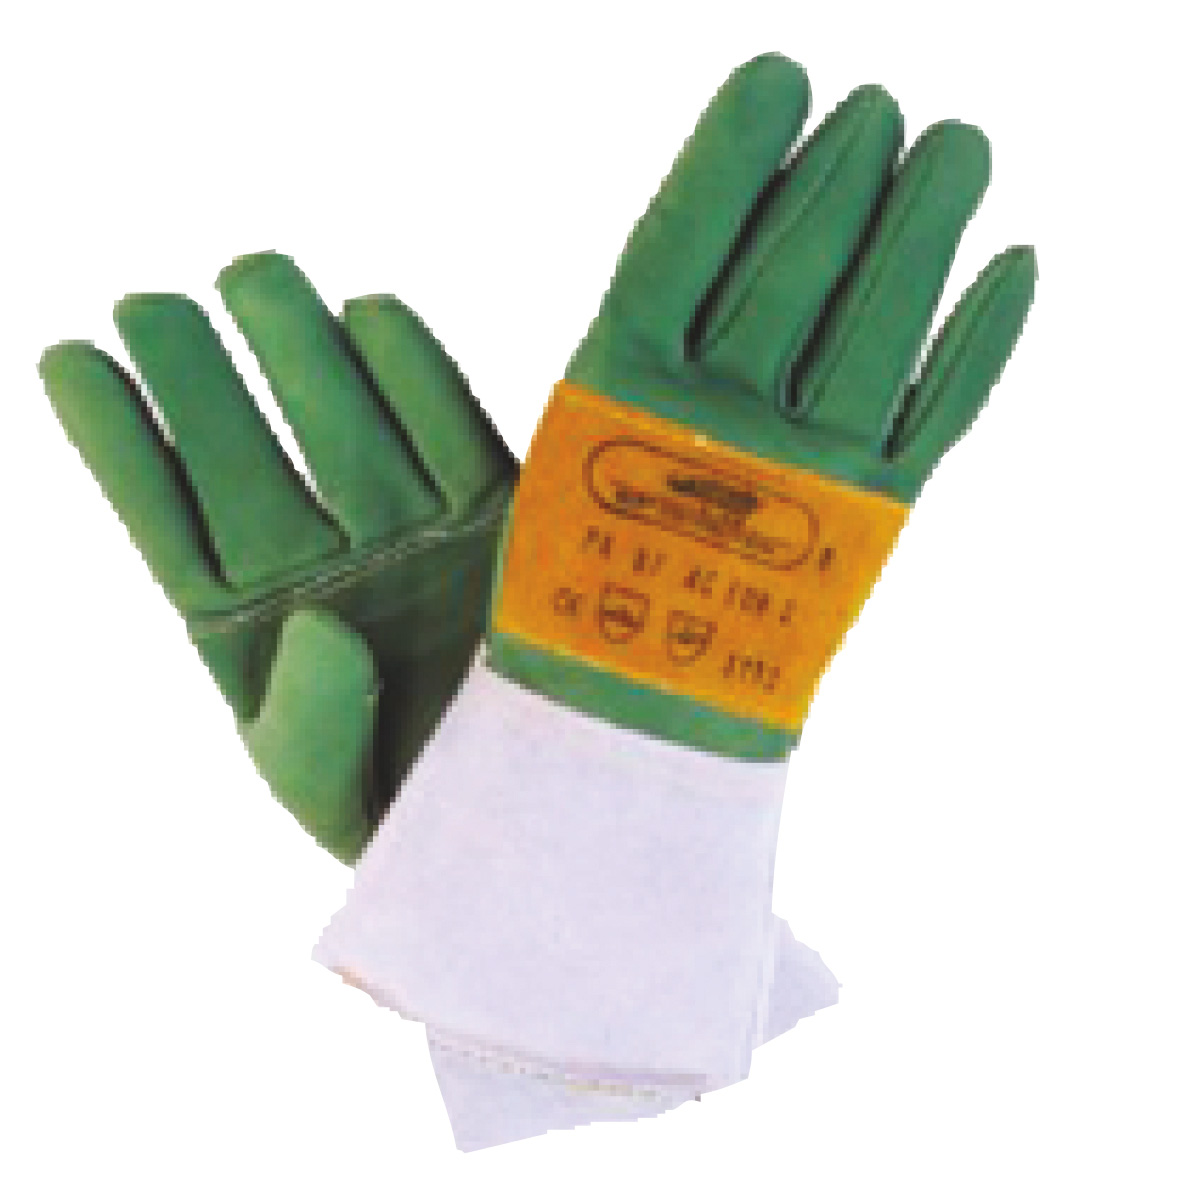 Gant anti-coupure - equipement de protection individuelle